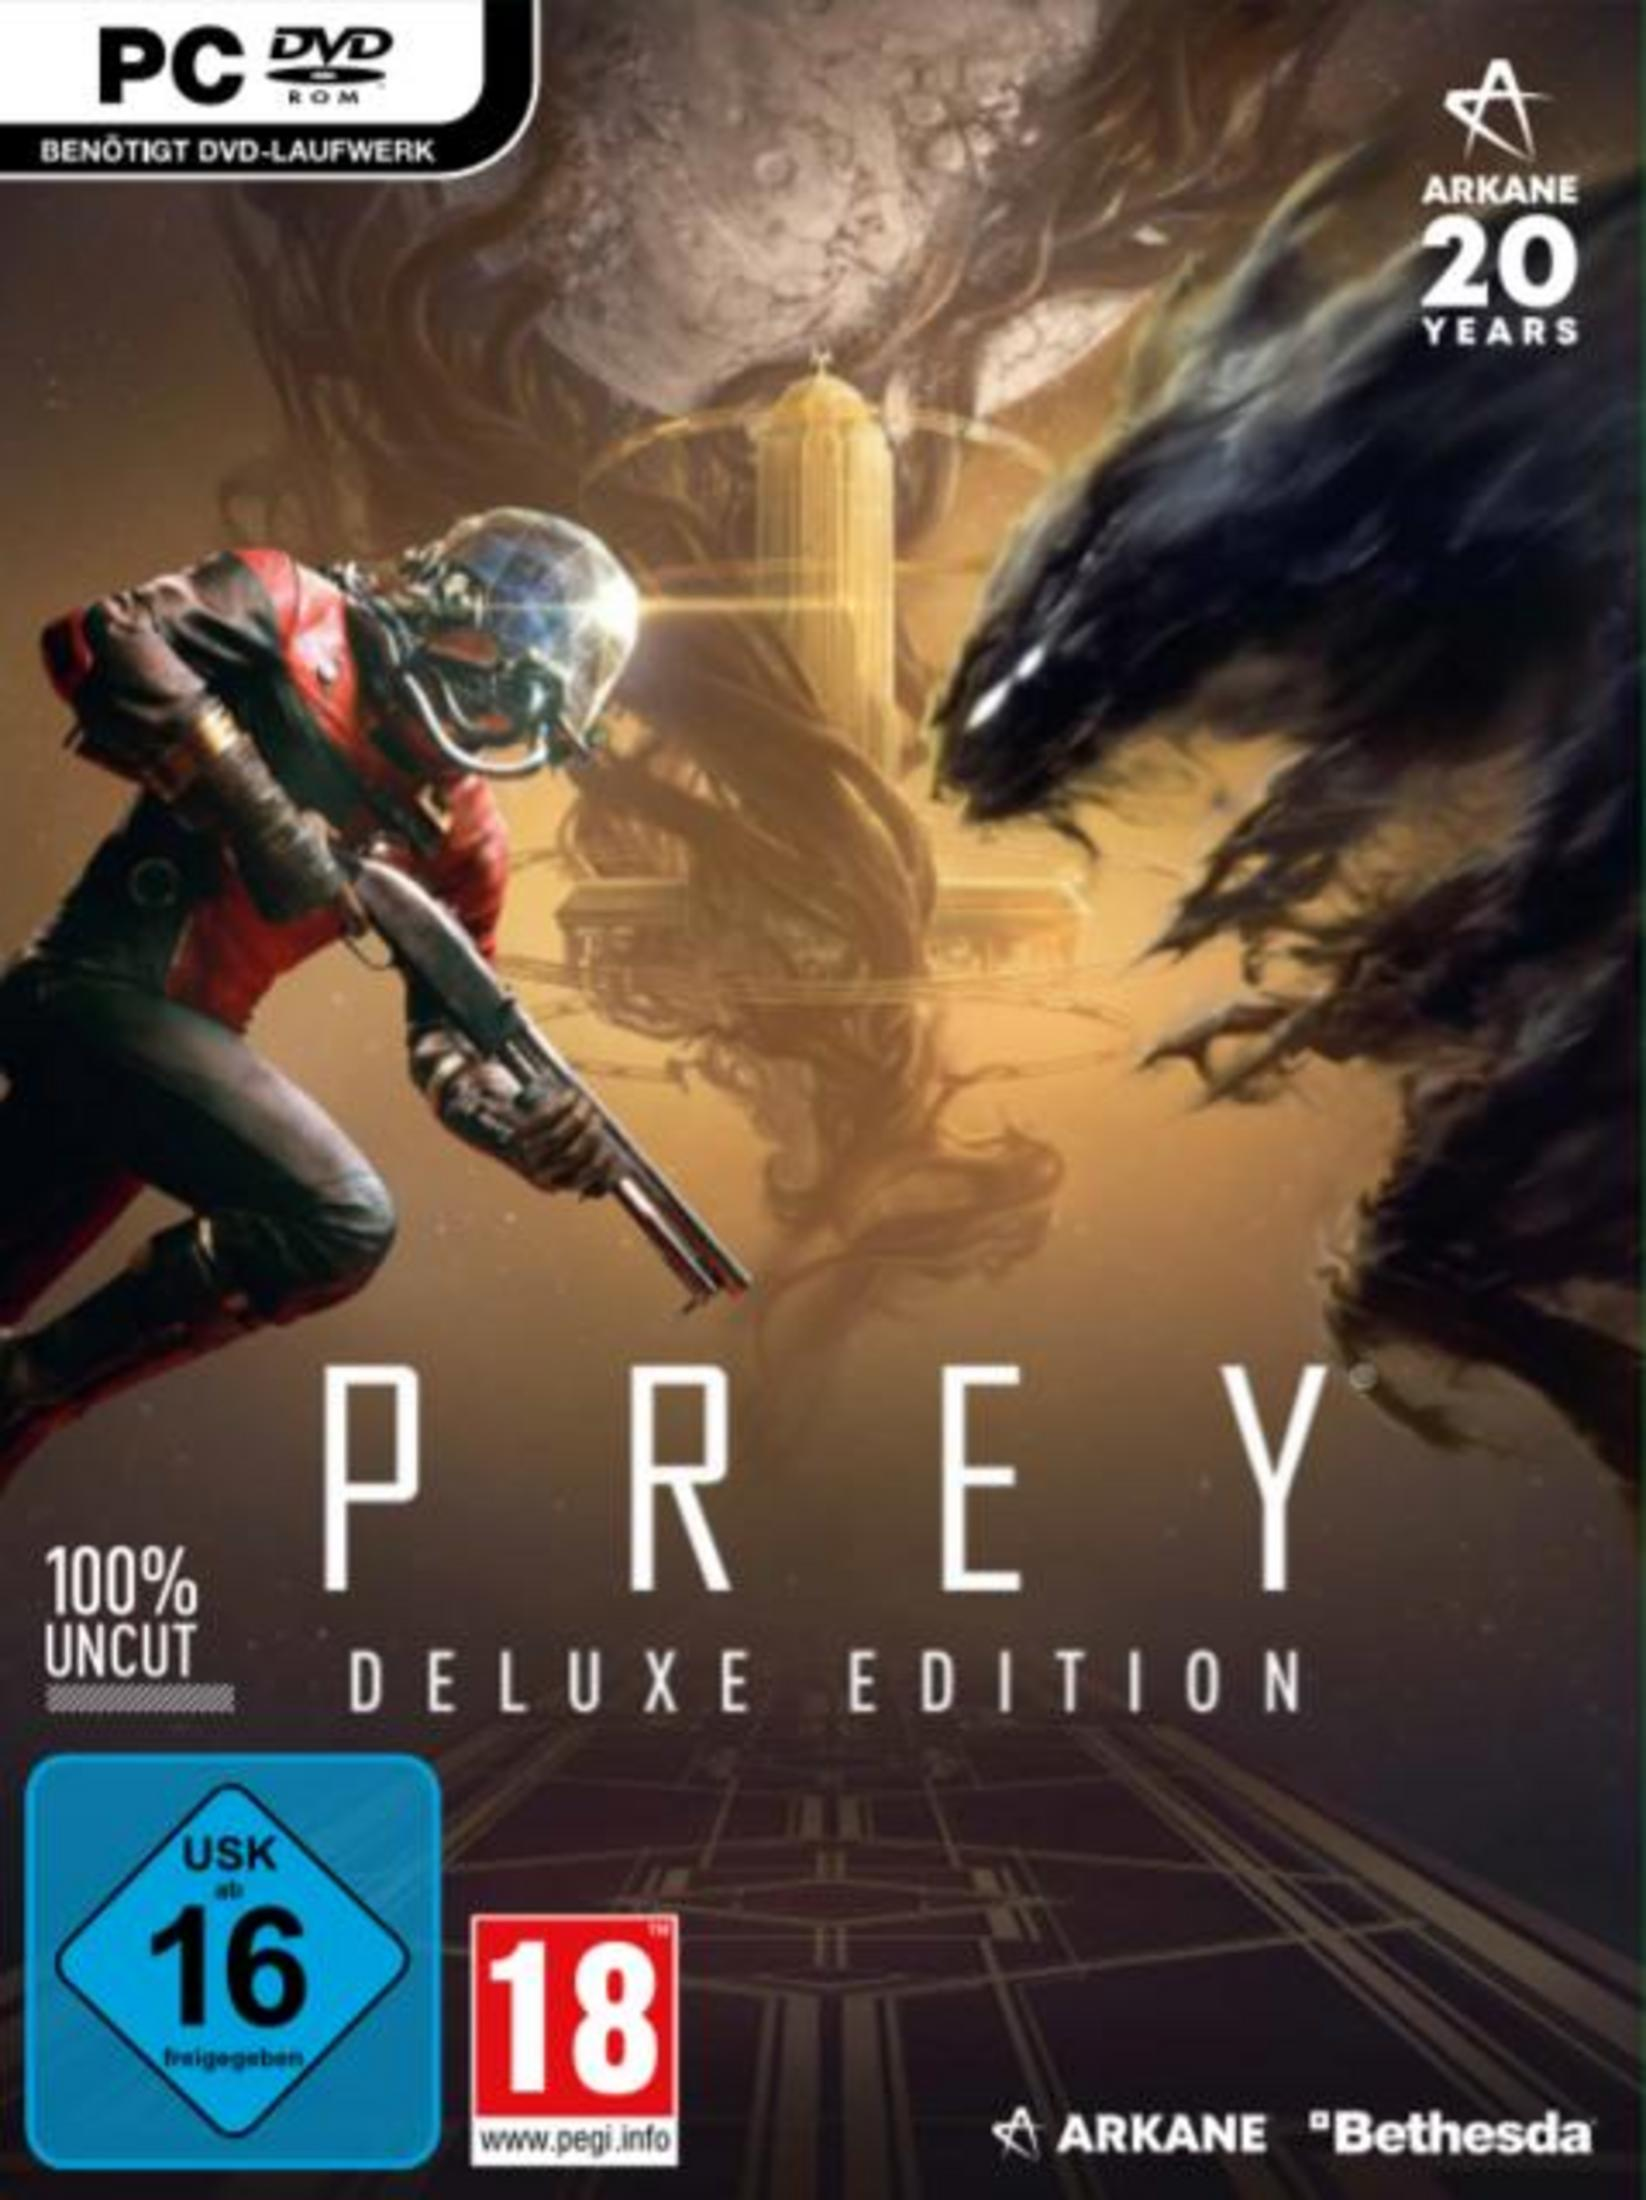 PC Edition Deluxe - [PC] Prey